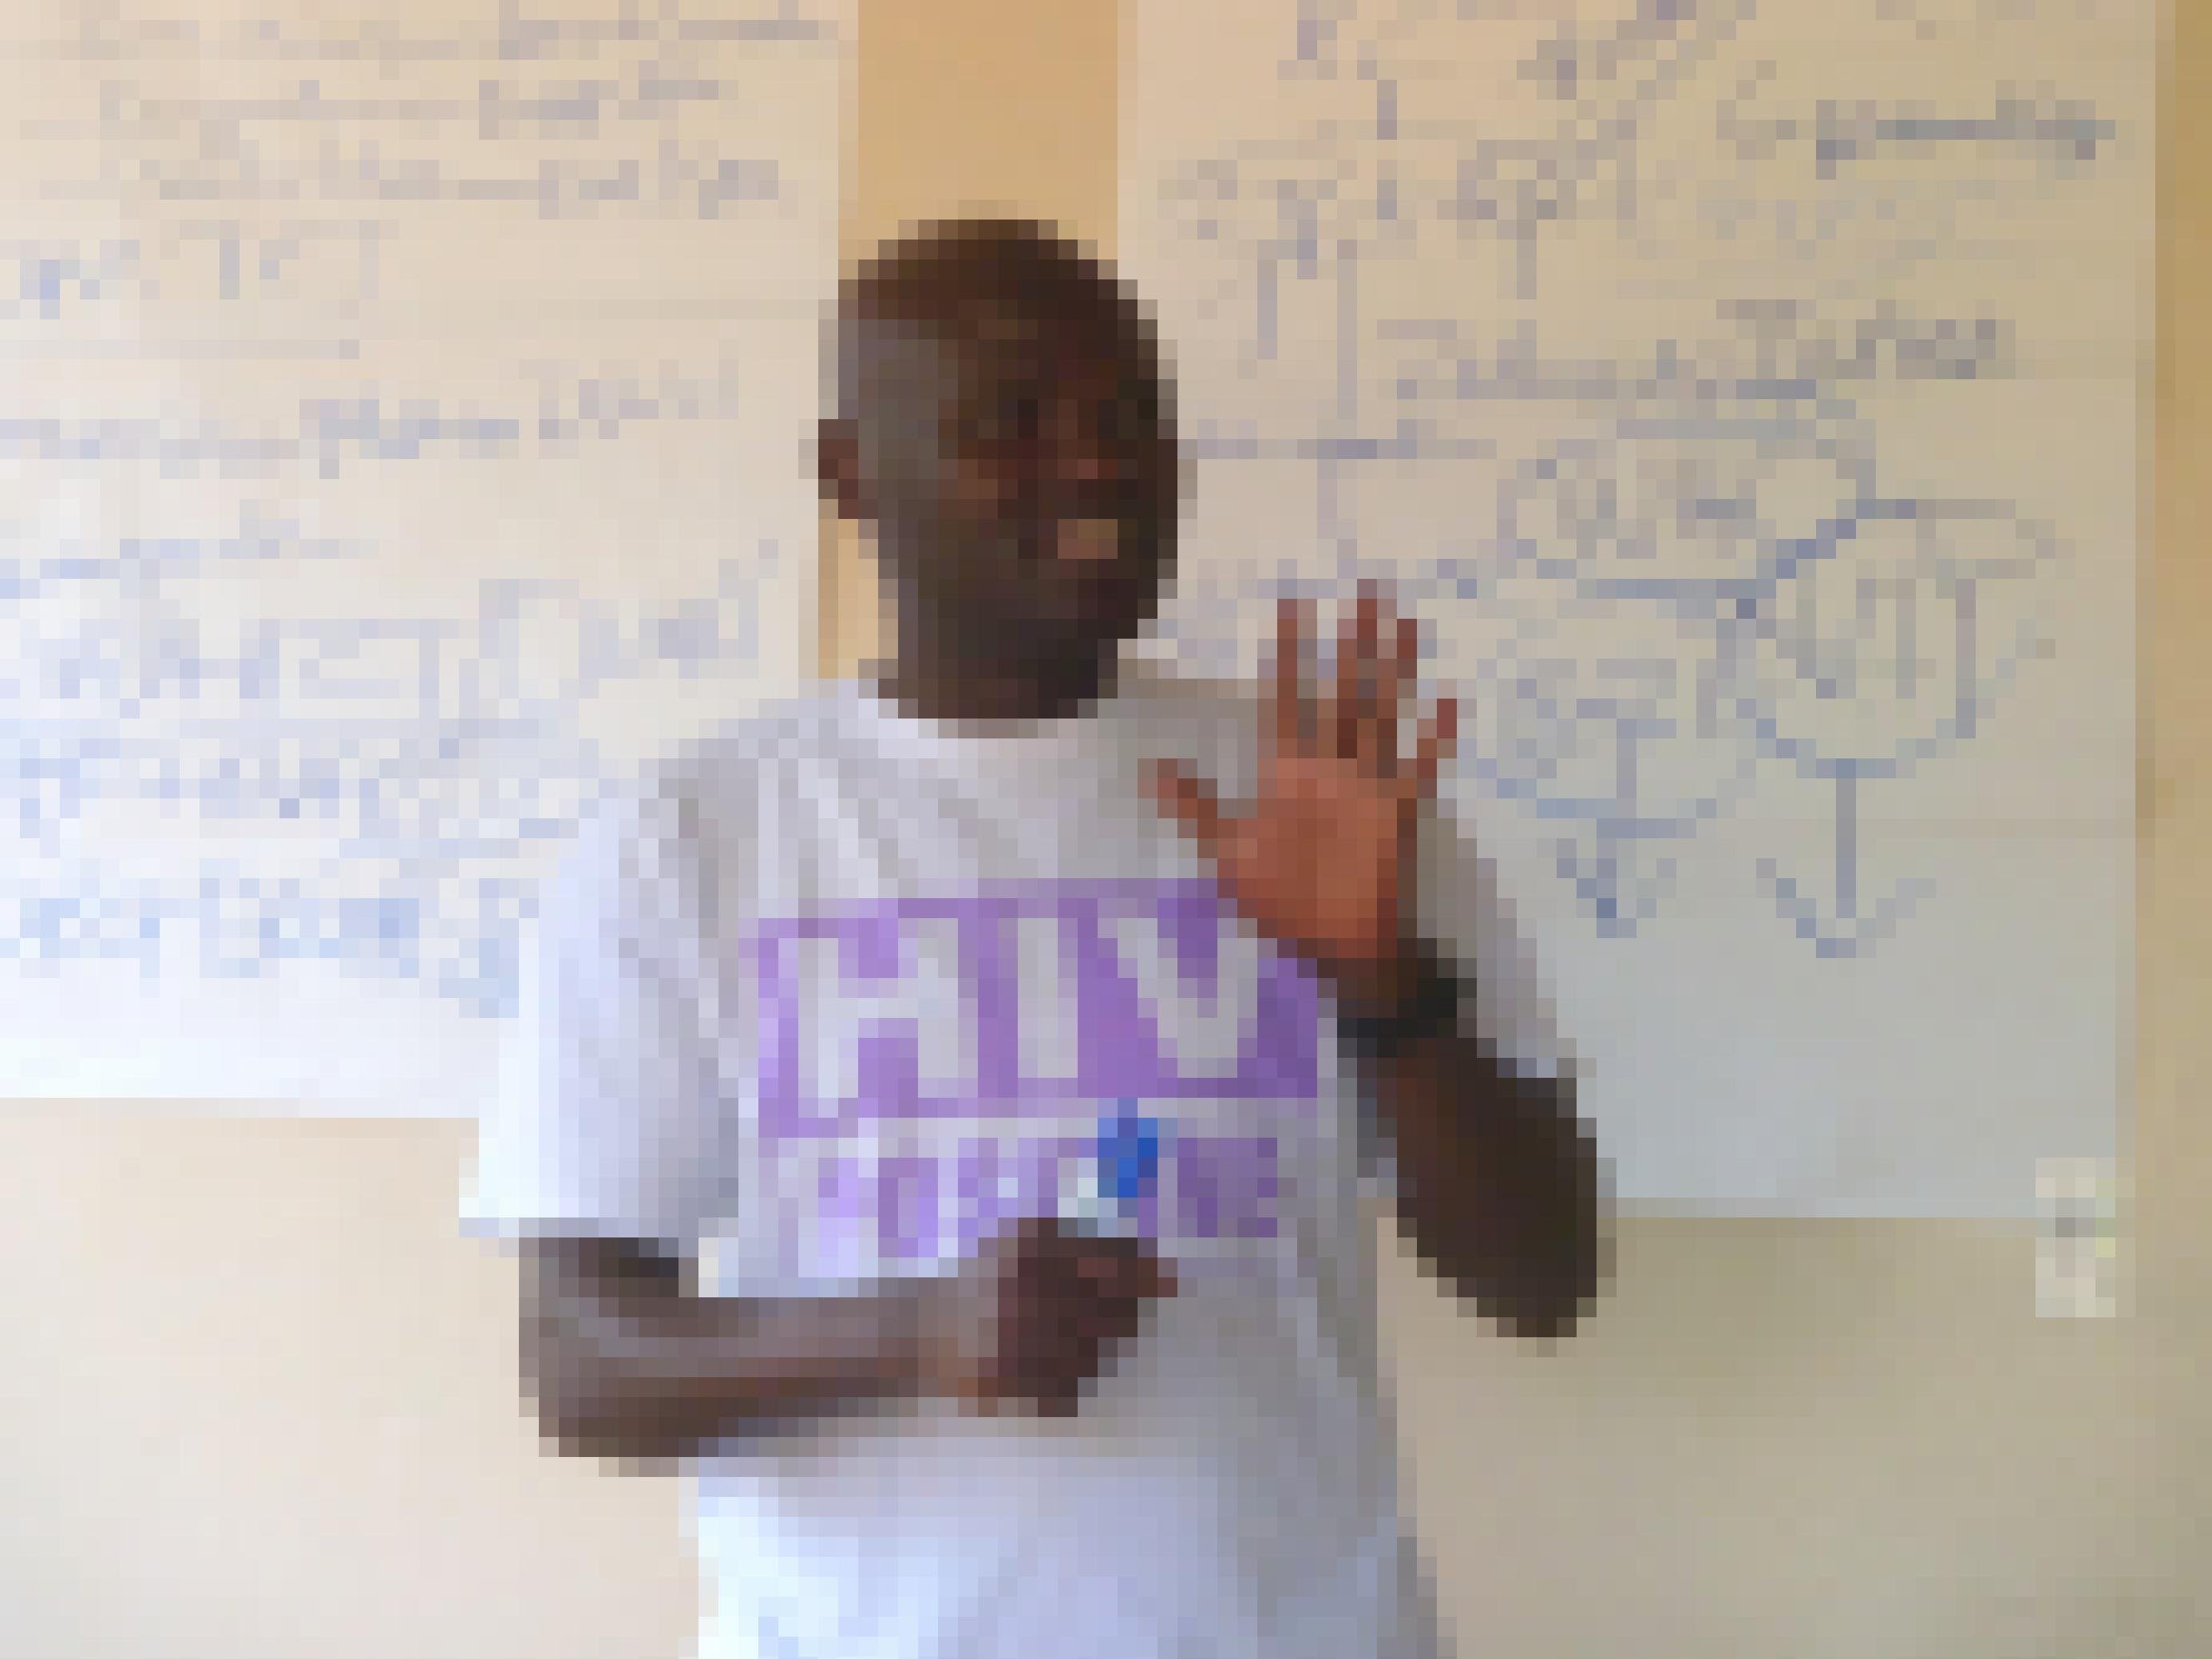 Ein Aktivist mit einem T-Shirt, der Aufdruck: HIV positiv. Er steht vor einer Tafel und gestikuliert, hält offensichtlich gerade einen Vortrag.